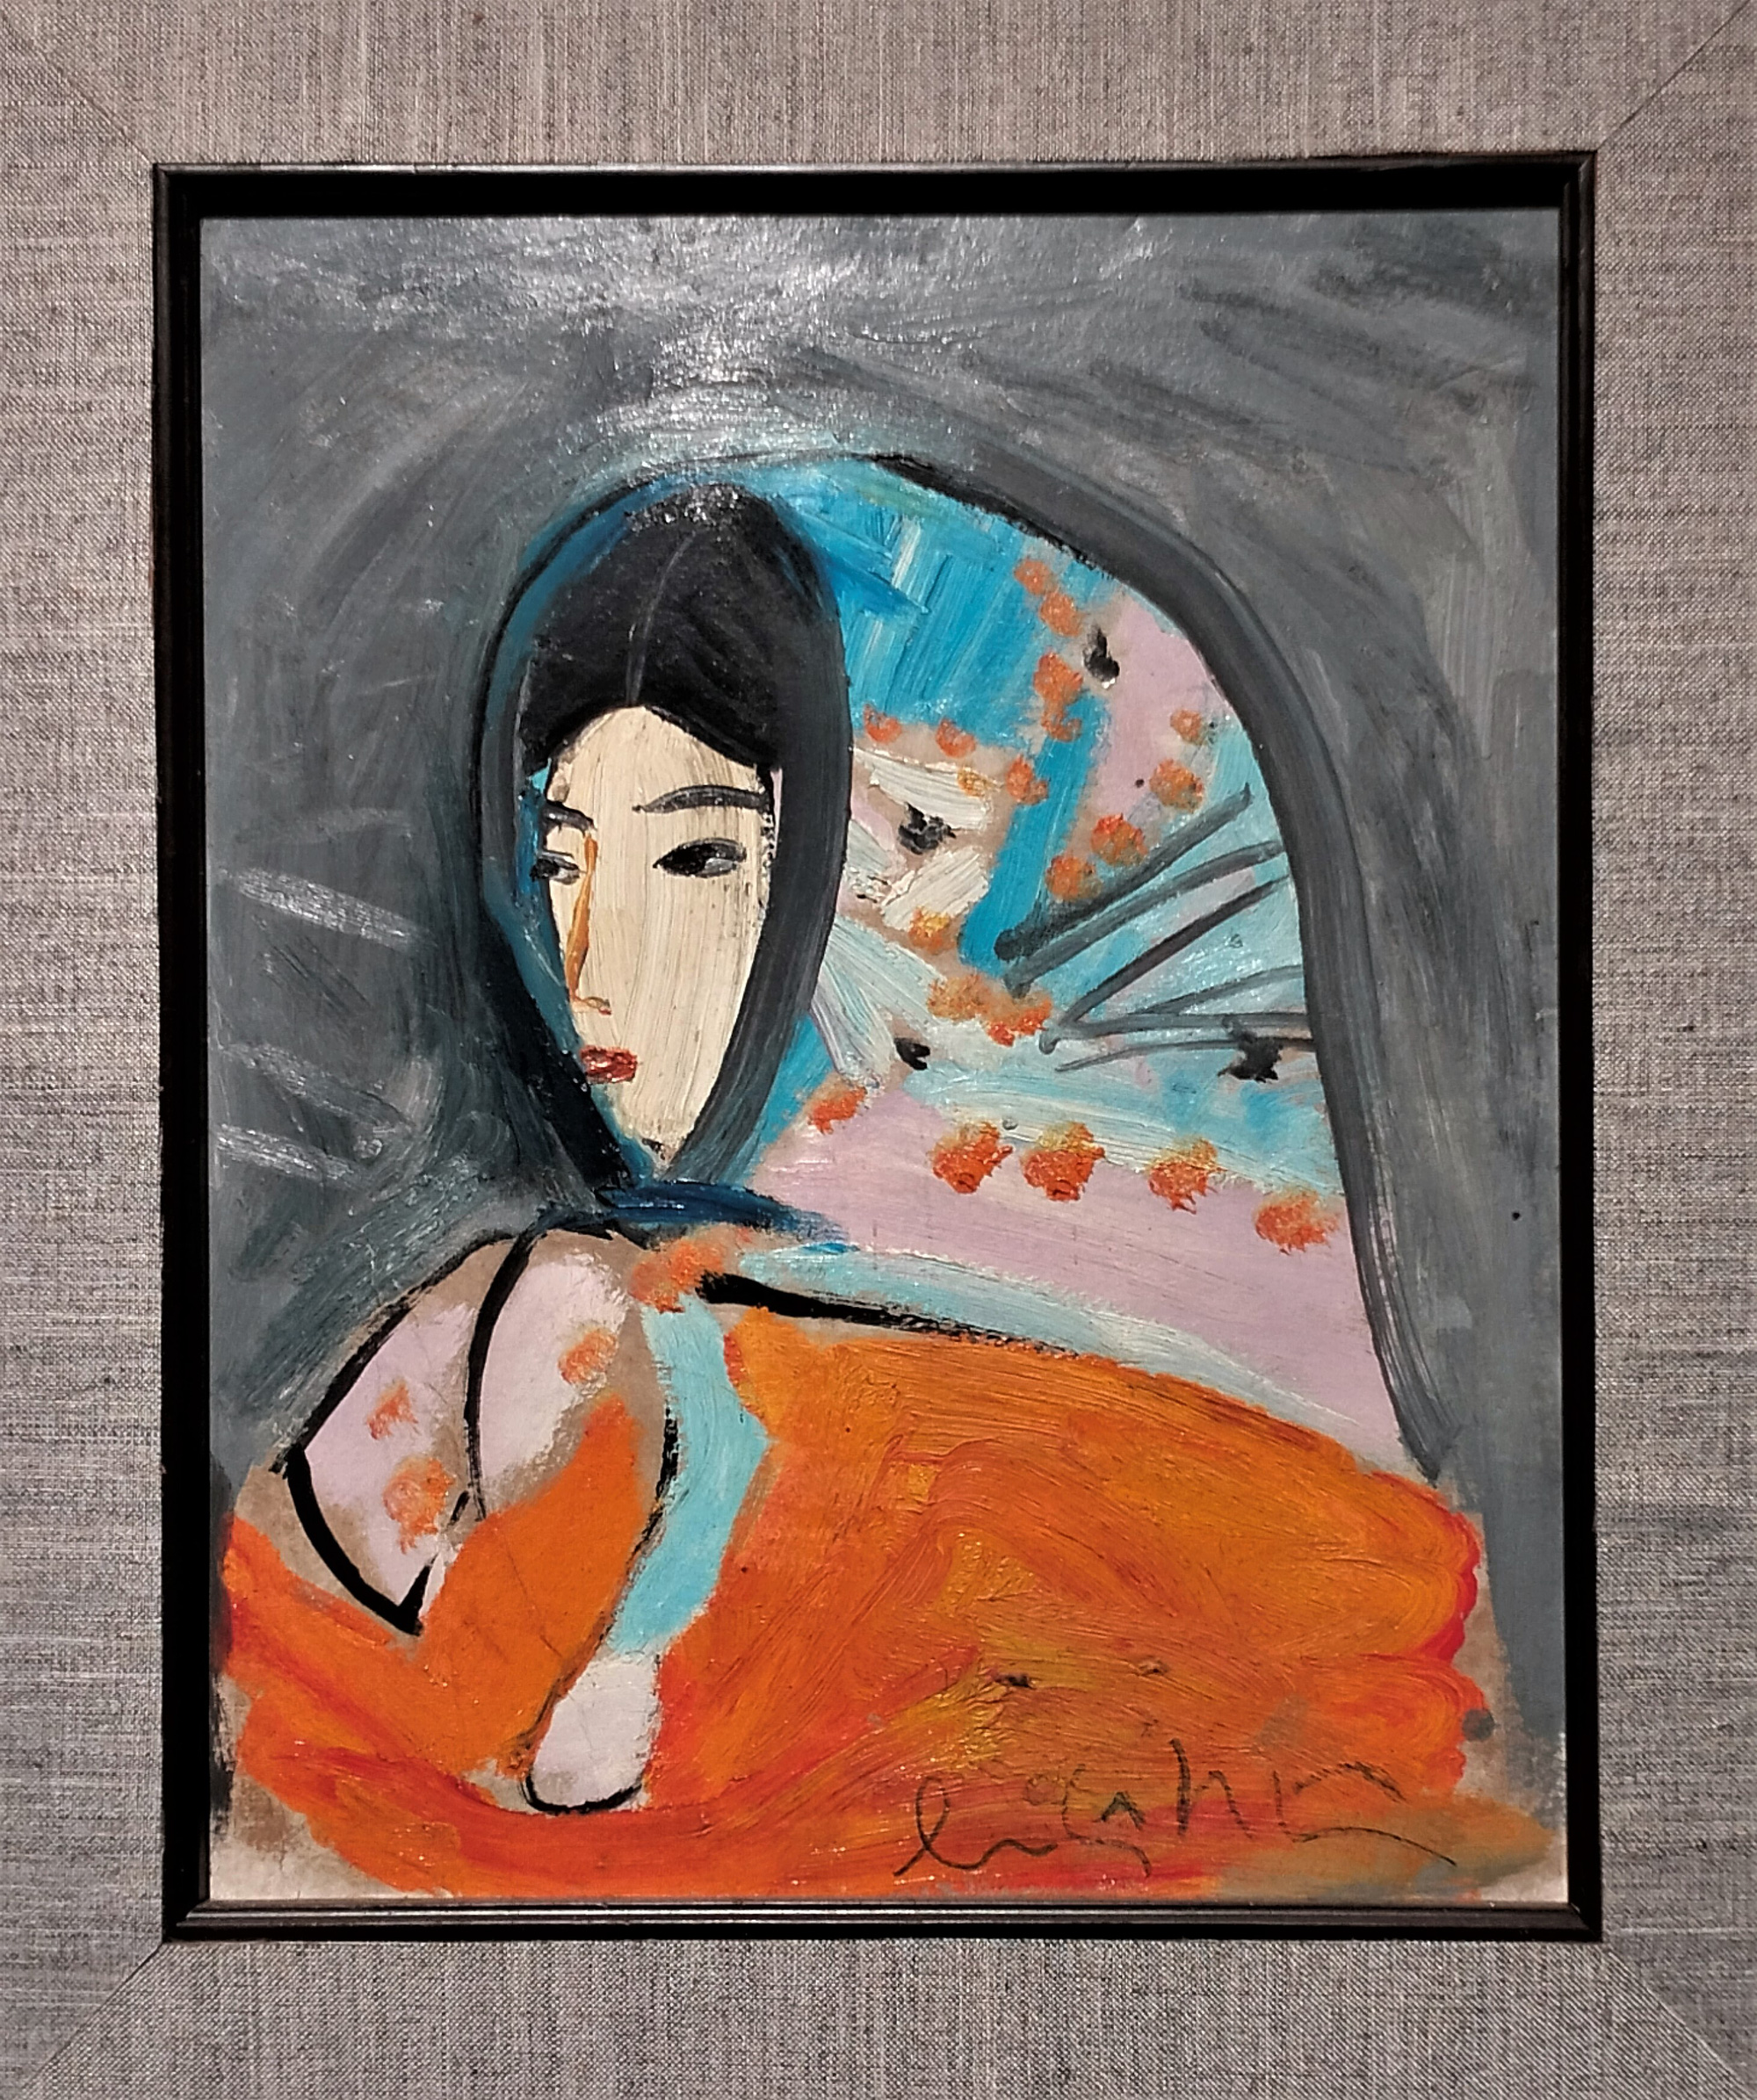 Tranh sơn dầu "Chân dung thiếu nữ" của họa sĩ Lưu Công Nhân (1930 - 2007). Ông là một trong các học trò xuất sắc nhất của danh họa Tô Ngọc Vân, có nhiều triển lãm tranh nhất tại Việt Nam, đặc biệt nổi tiếng với các bức tranh nude và câu chuyện về lối sống phóng túng, dám dấn thân cho nghệ thuật.